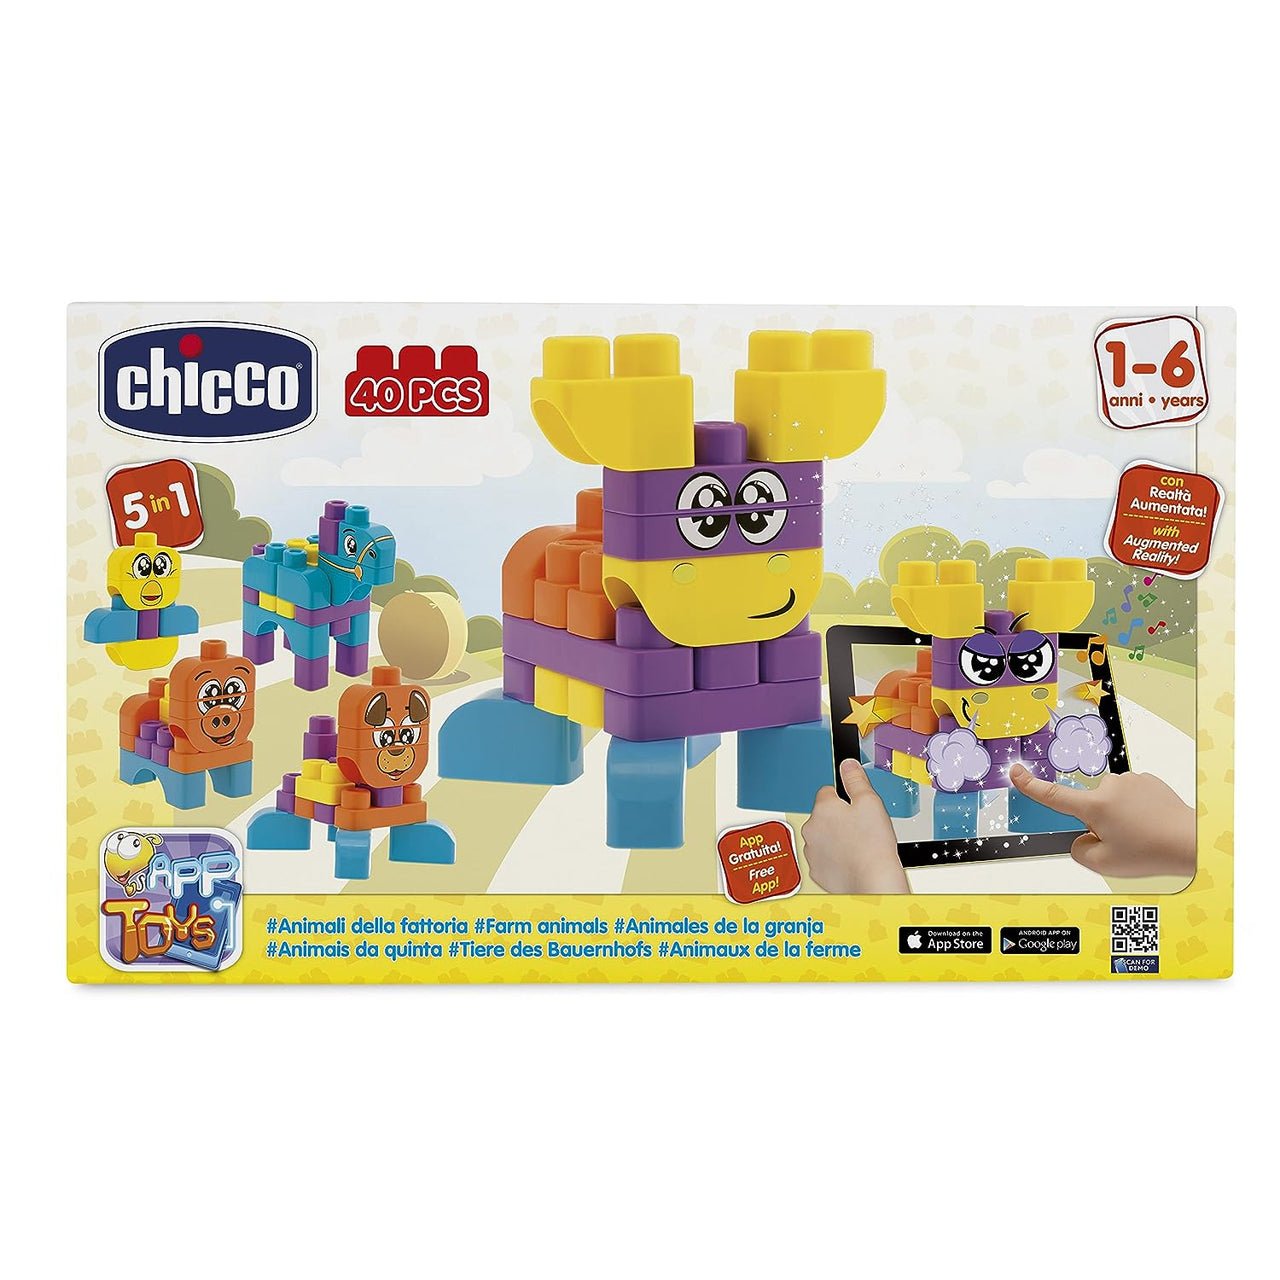 Chicco Toy Building Blocks Animals - 40 Pieces, Multi Color